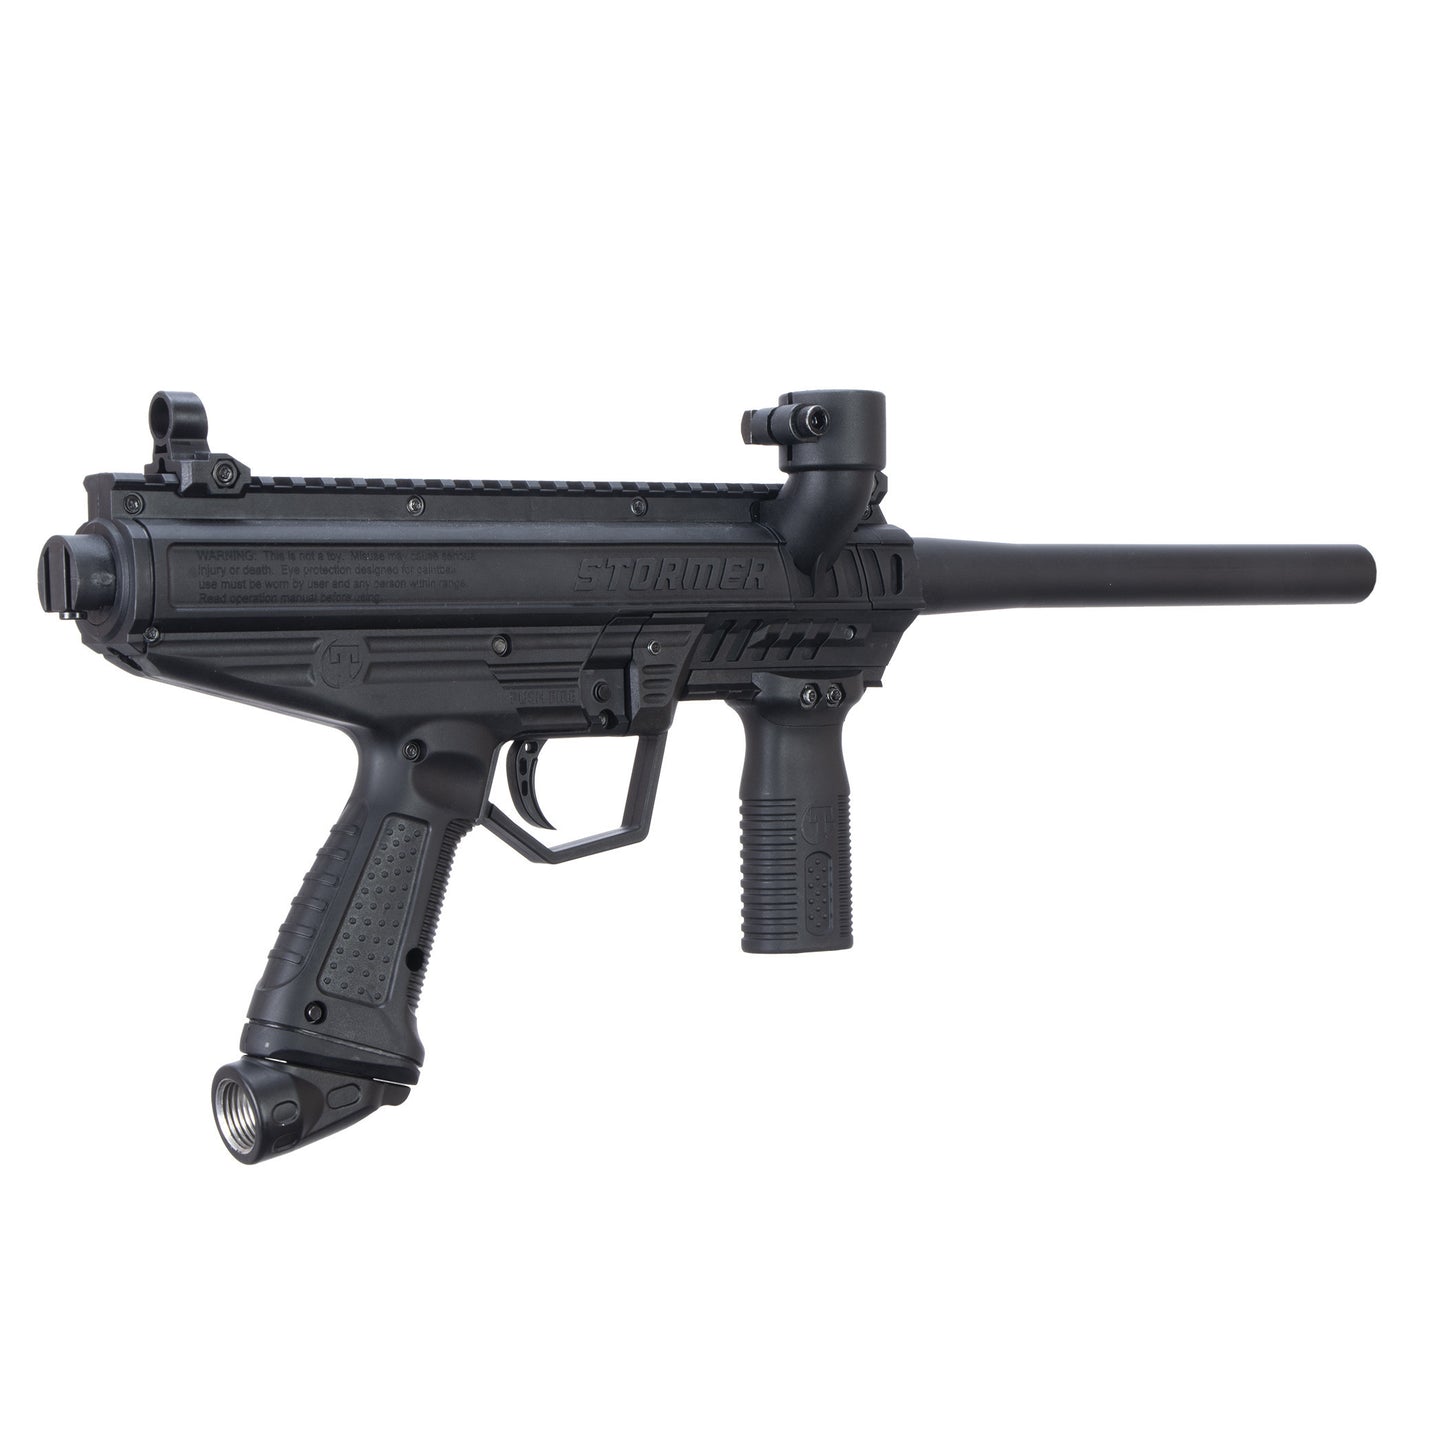 Tippmann Stormer Basic Paintball Gun - Black (Basic)